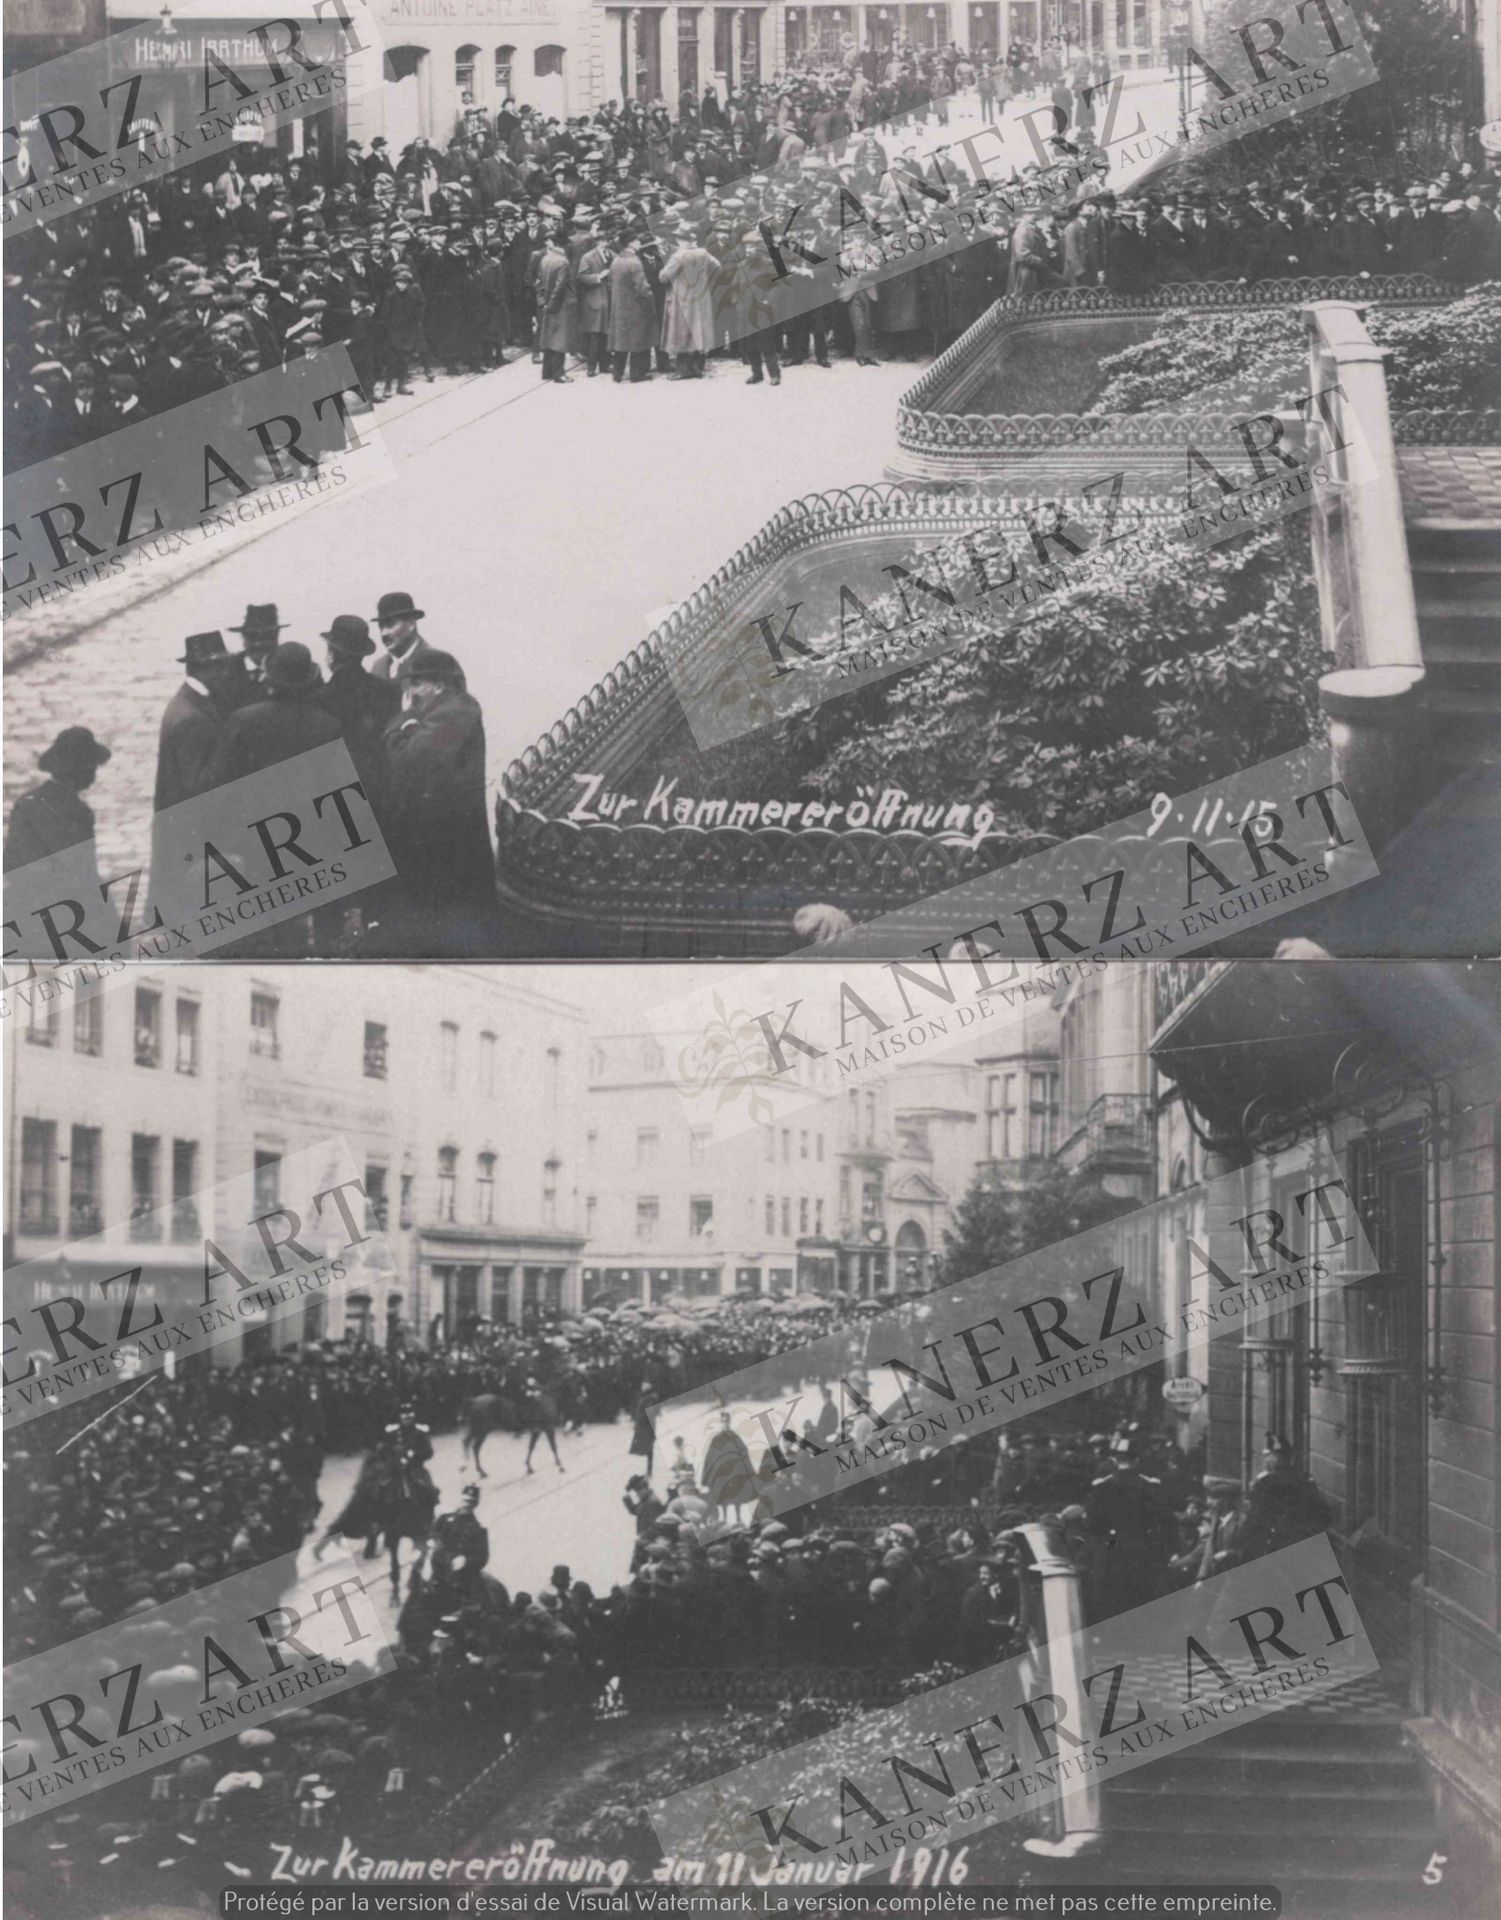 Null (WAR I) Photo card of a demonstration "Zur Kammereröffnung 9.11.15" + Photo&hellip;